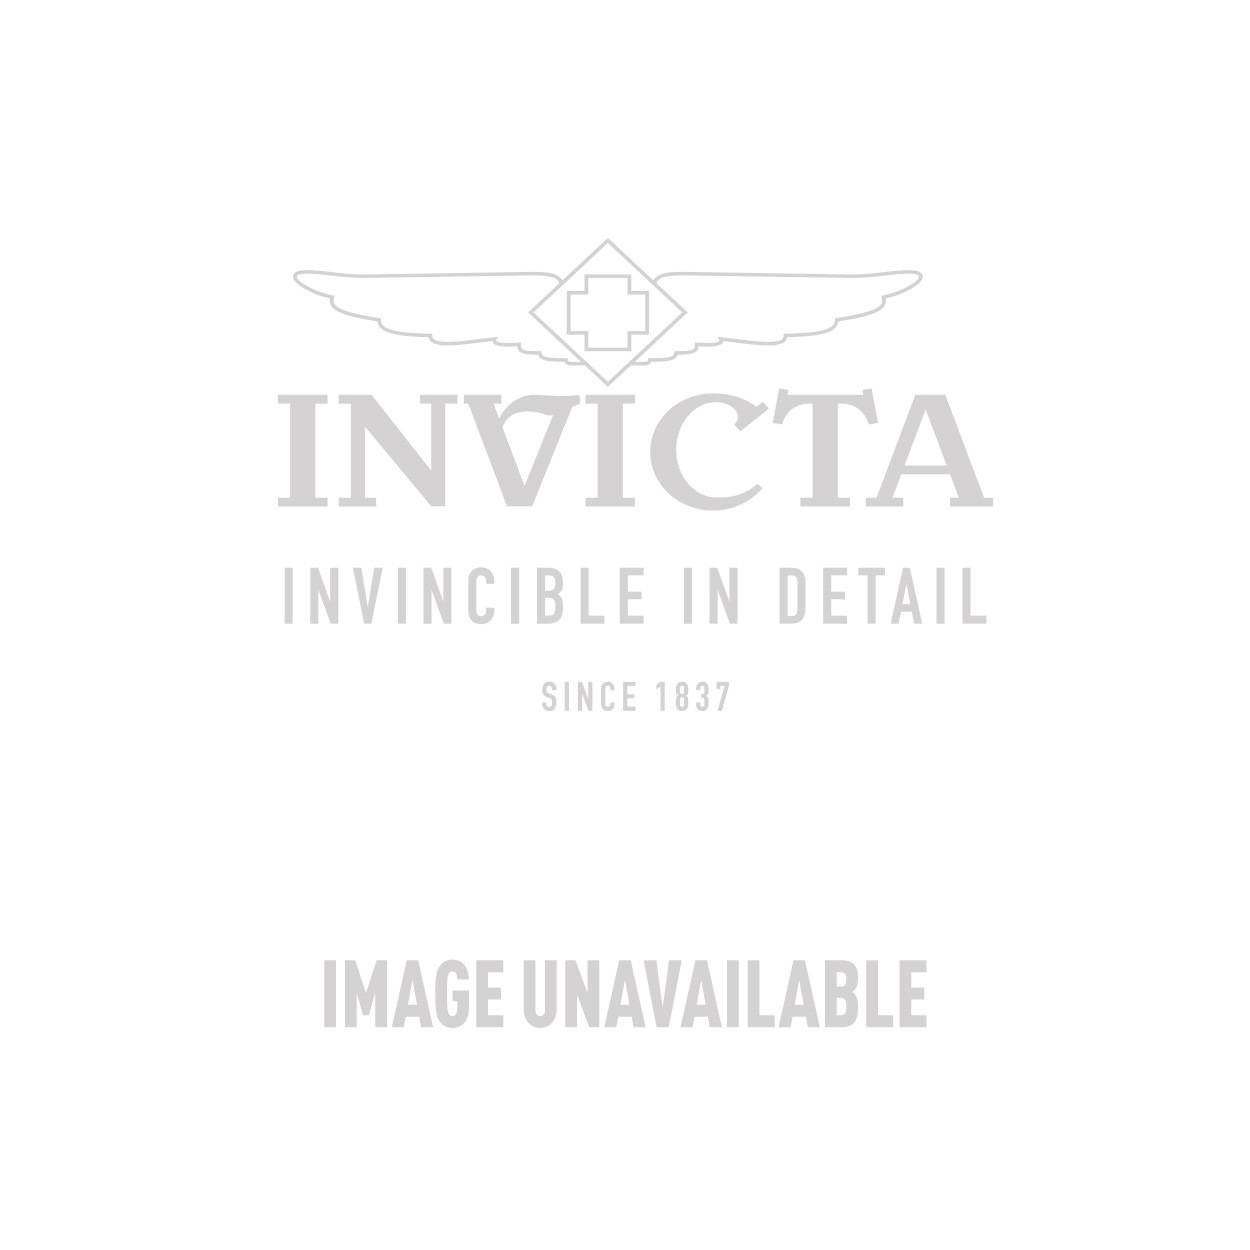 Invicta Model 31507